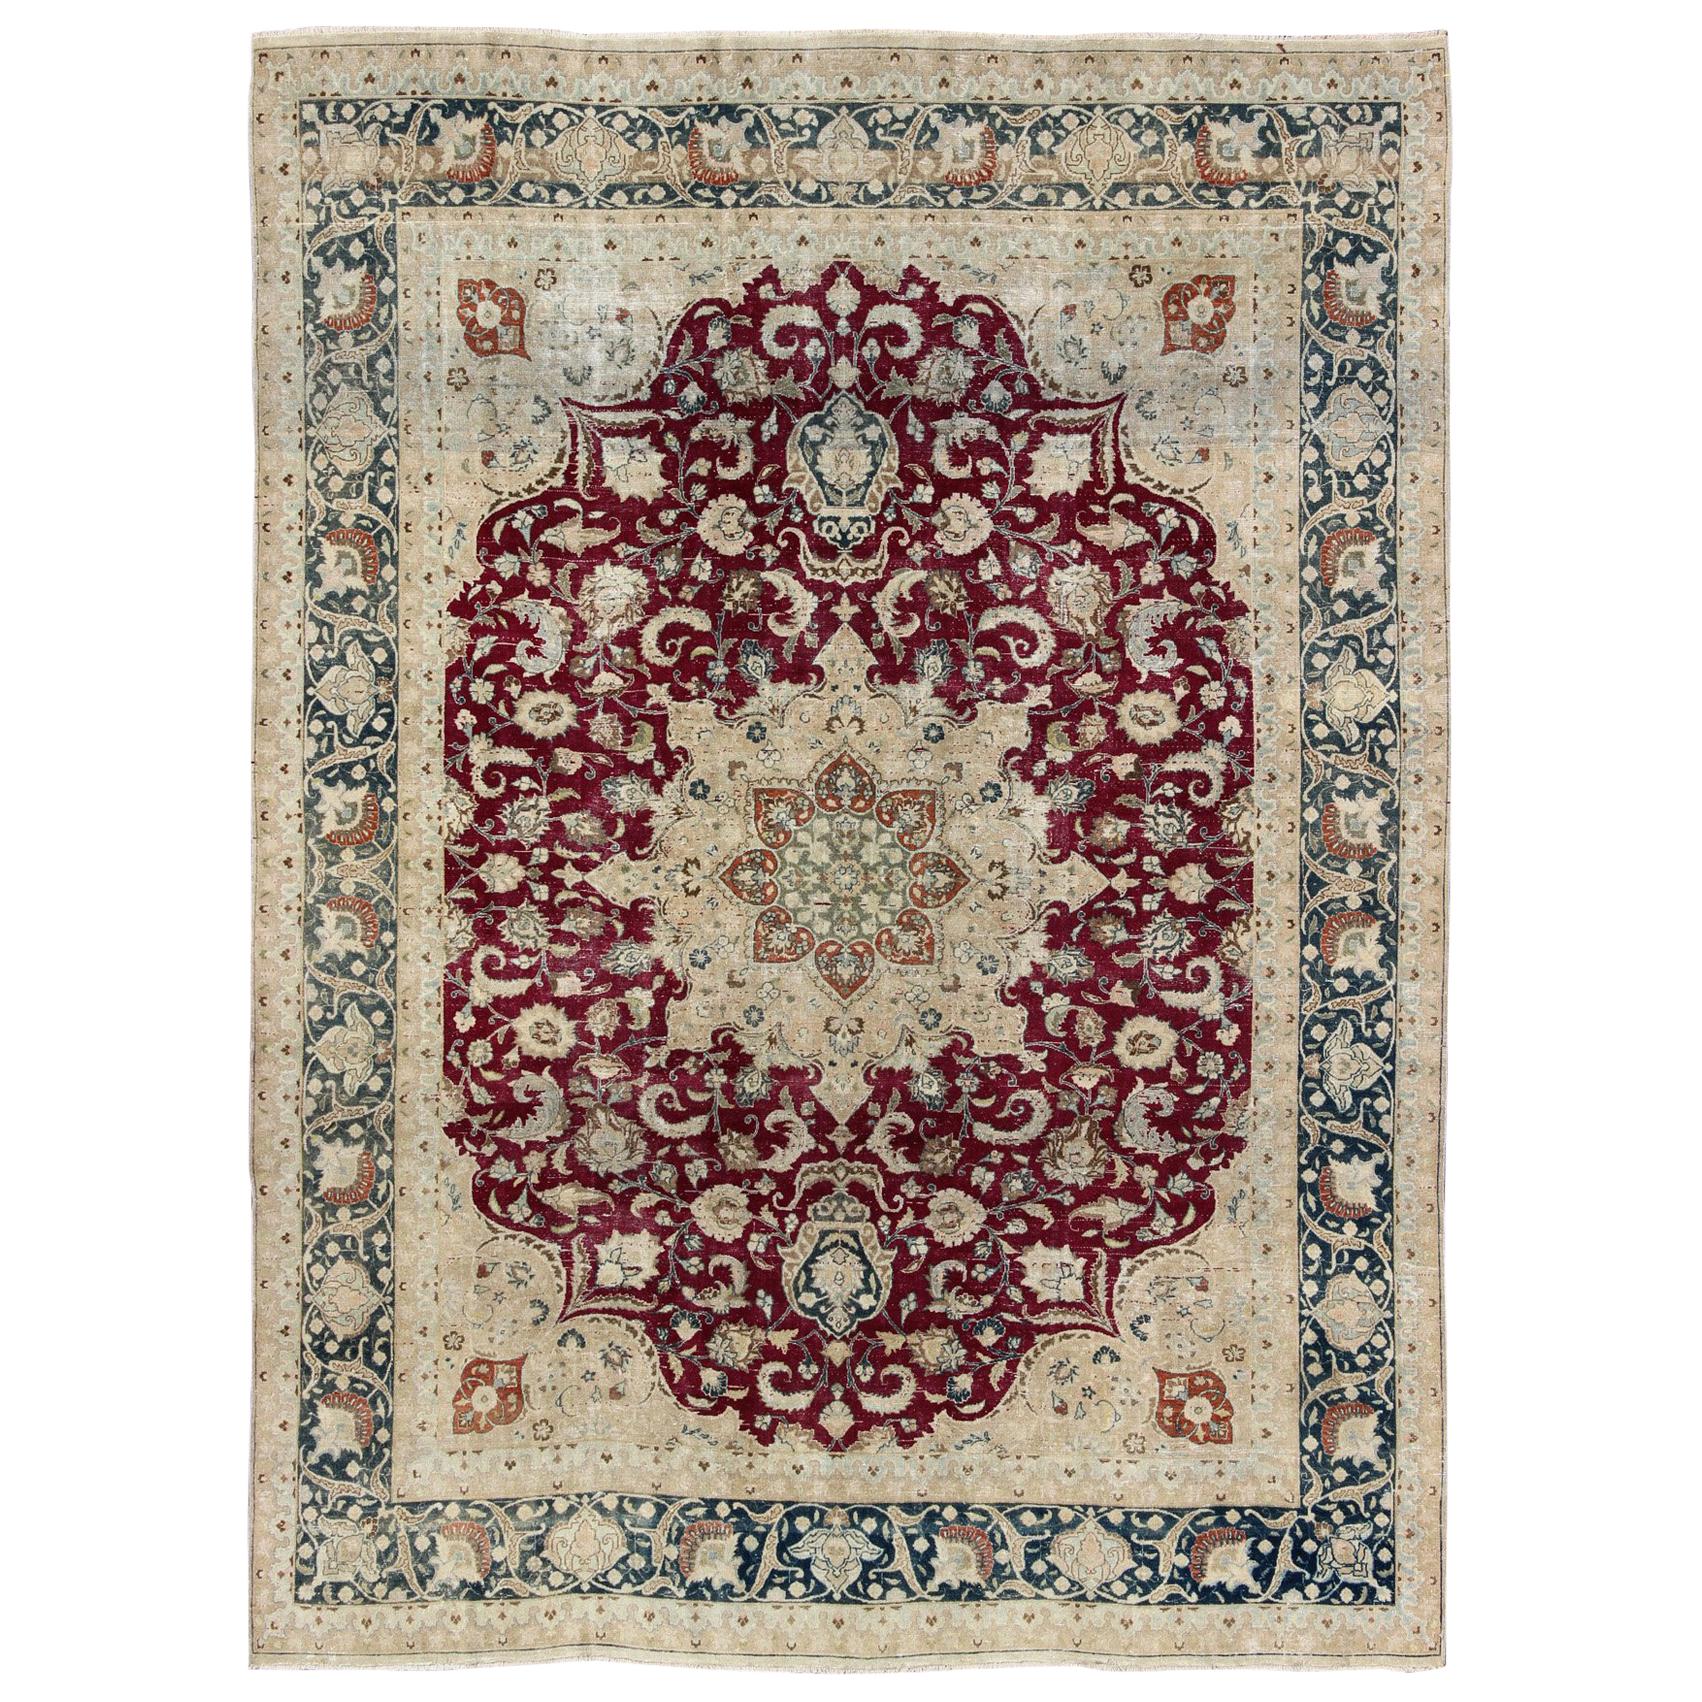 Antiker persischer Mashad-Teppich mit mehrlagigem Blumenmedaillon in Rot, Stahlblau und Creme